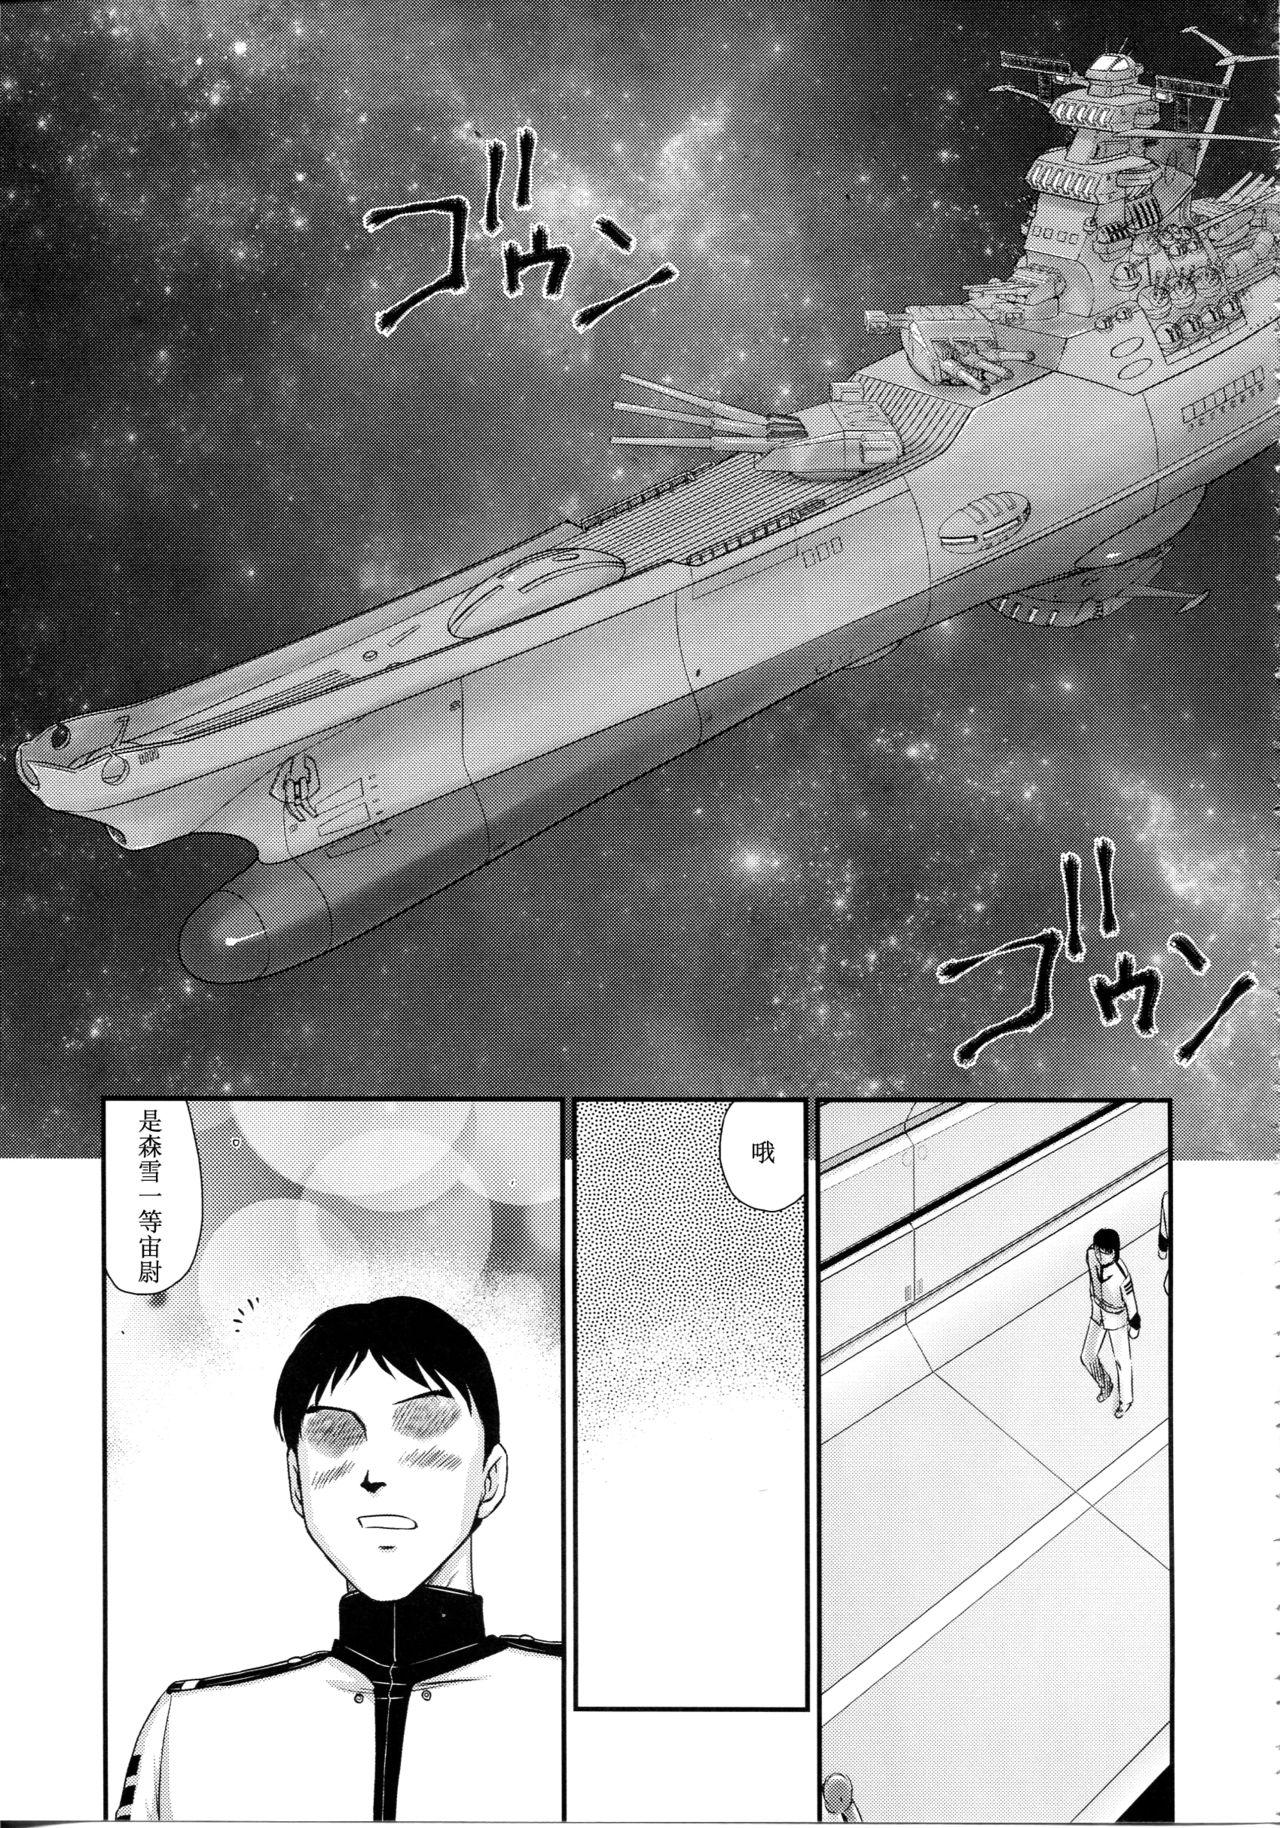 Sucking Dick Yuki no Shizuku - Space battleship yamato 2199 Gay Cut - Page 10